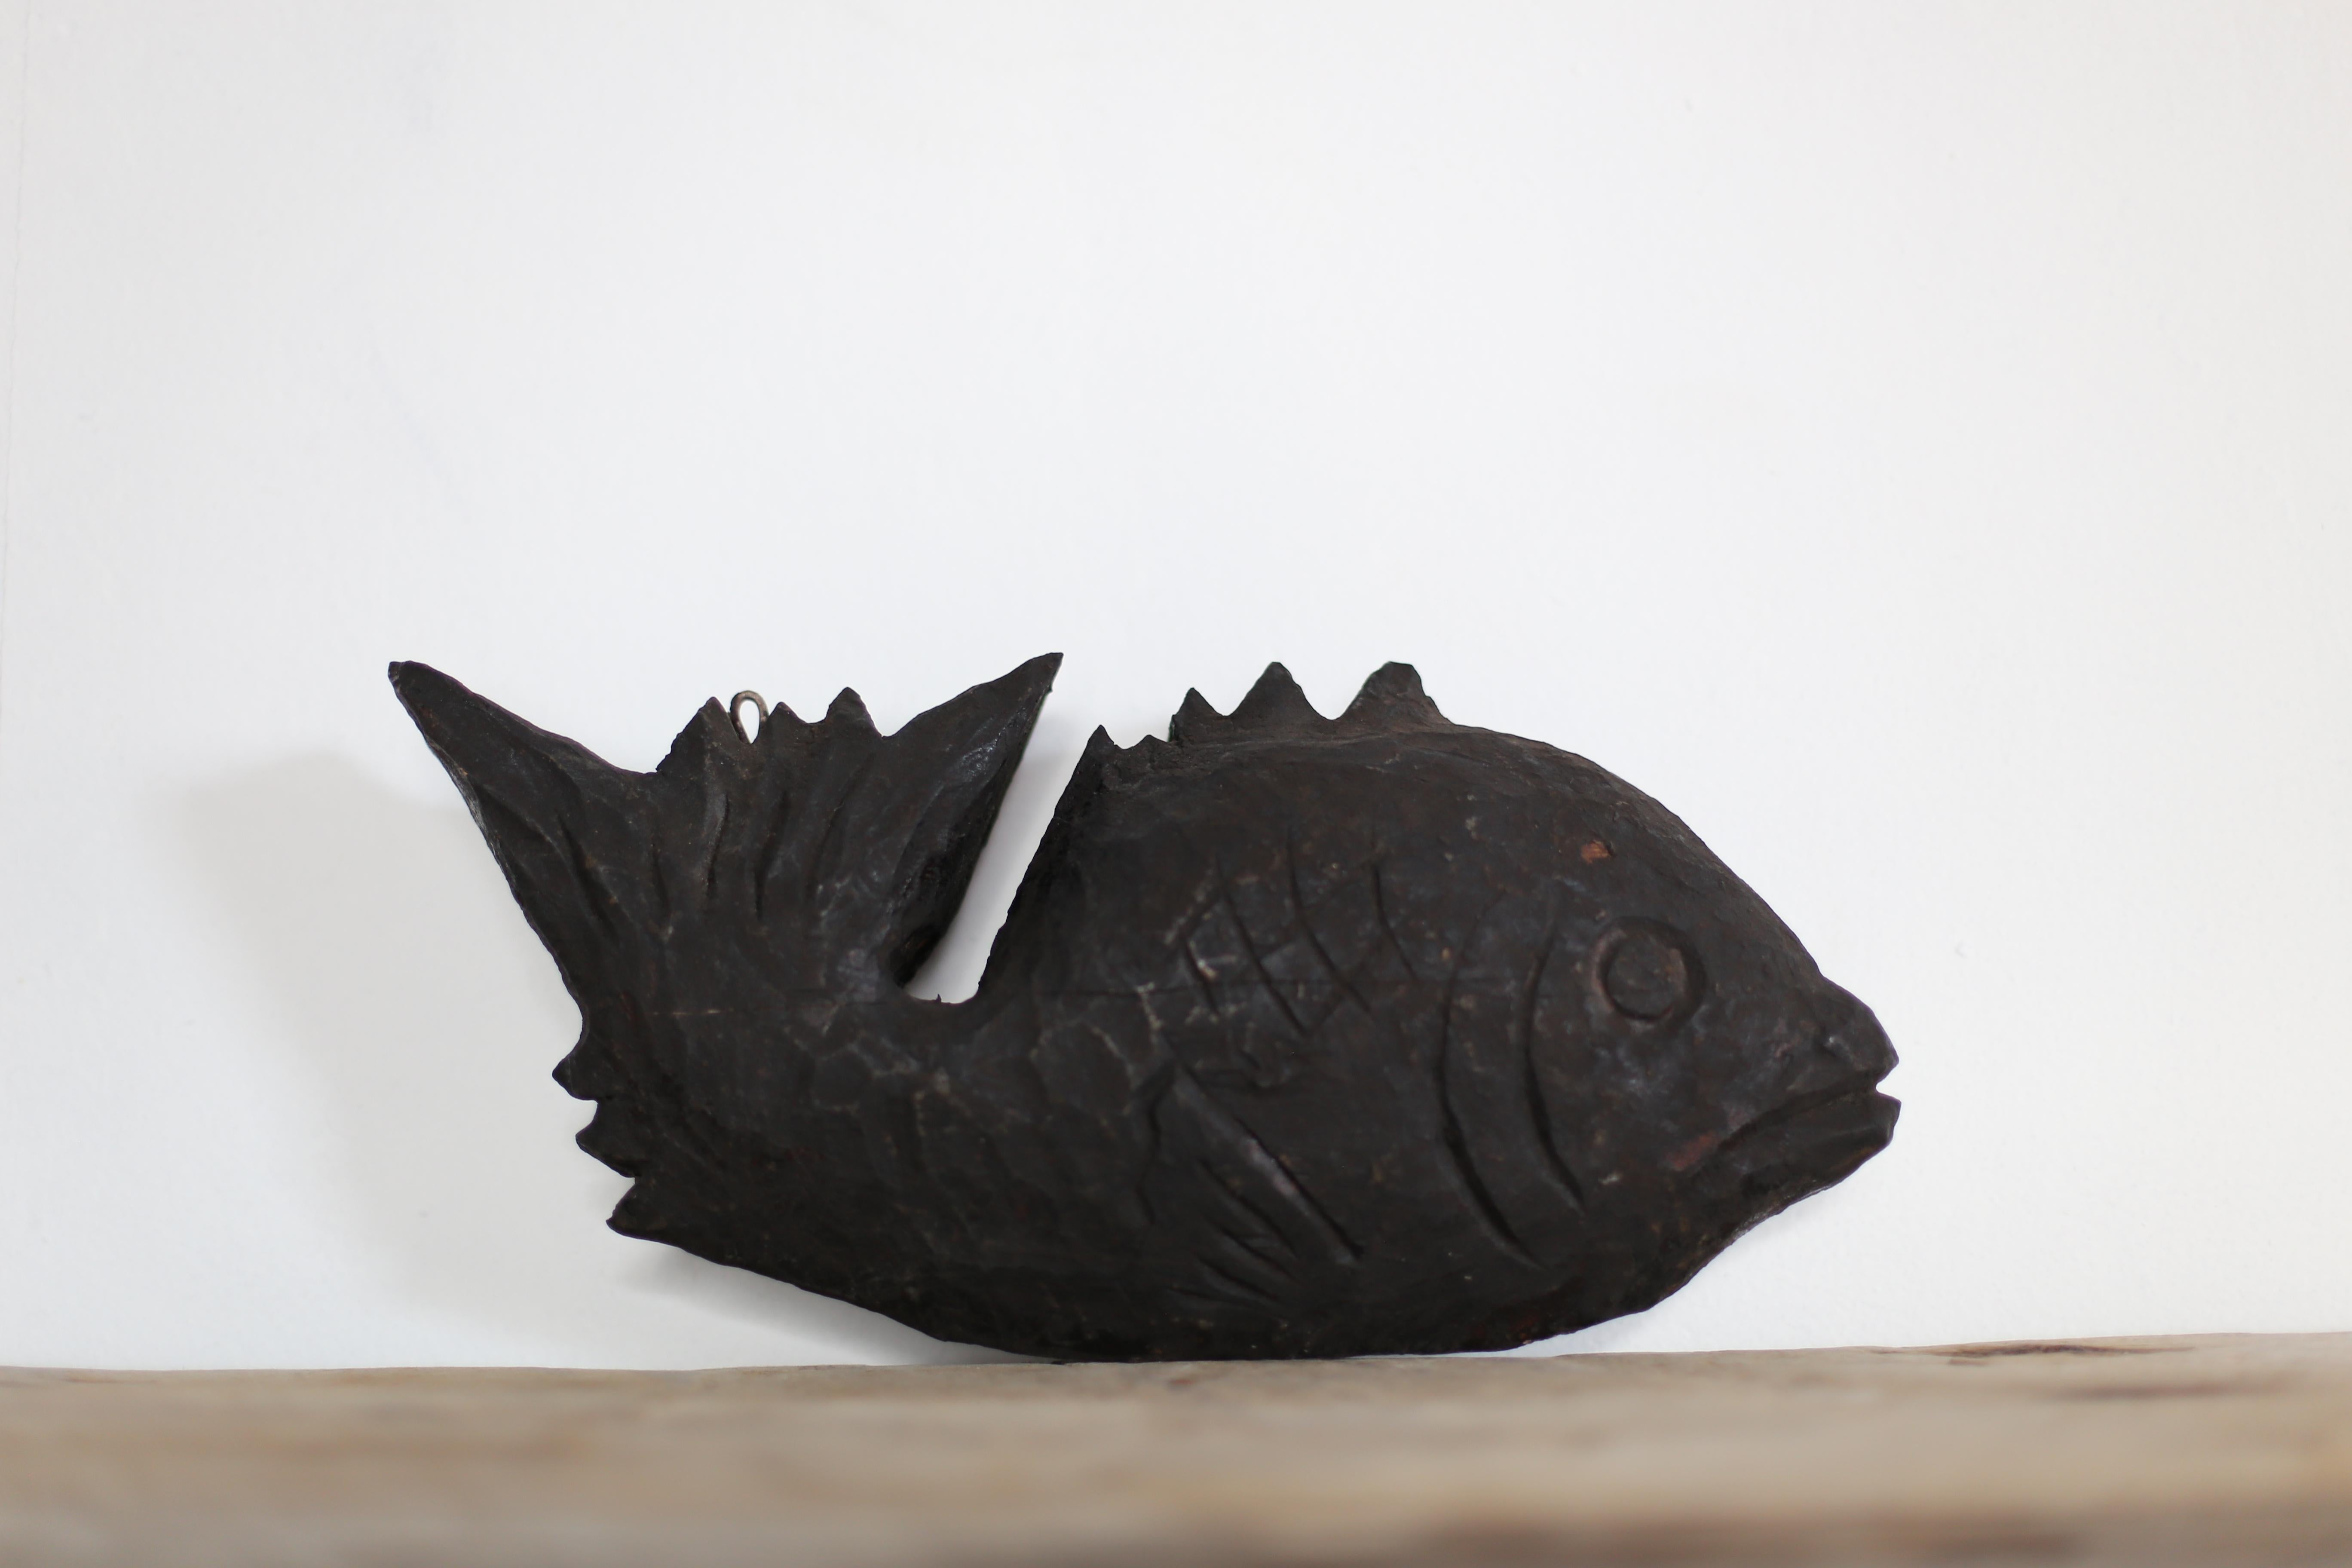 Dies ist eine sehr alte japanische Holzschnitzerei eines Fisches.
Es handelt sich um eine Holzschnitzerei aus der Meiji-Zeit (1860-1900er Jahre).
Sie ist aus Zedernholz geschnitzt.

Diese Holzschnitzerei ist an einem freien Haken befestigt, der in